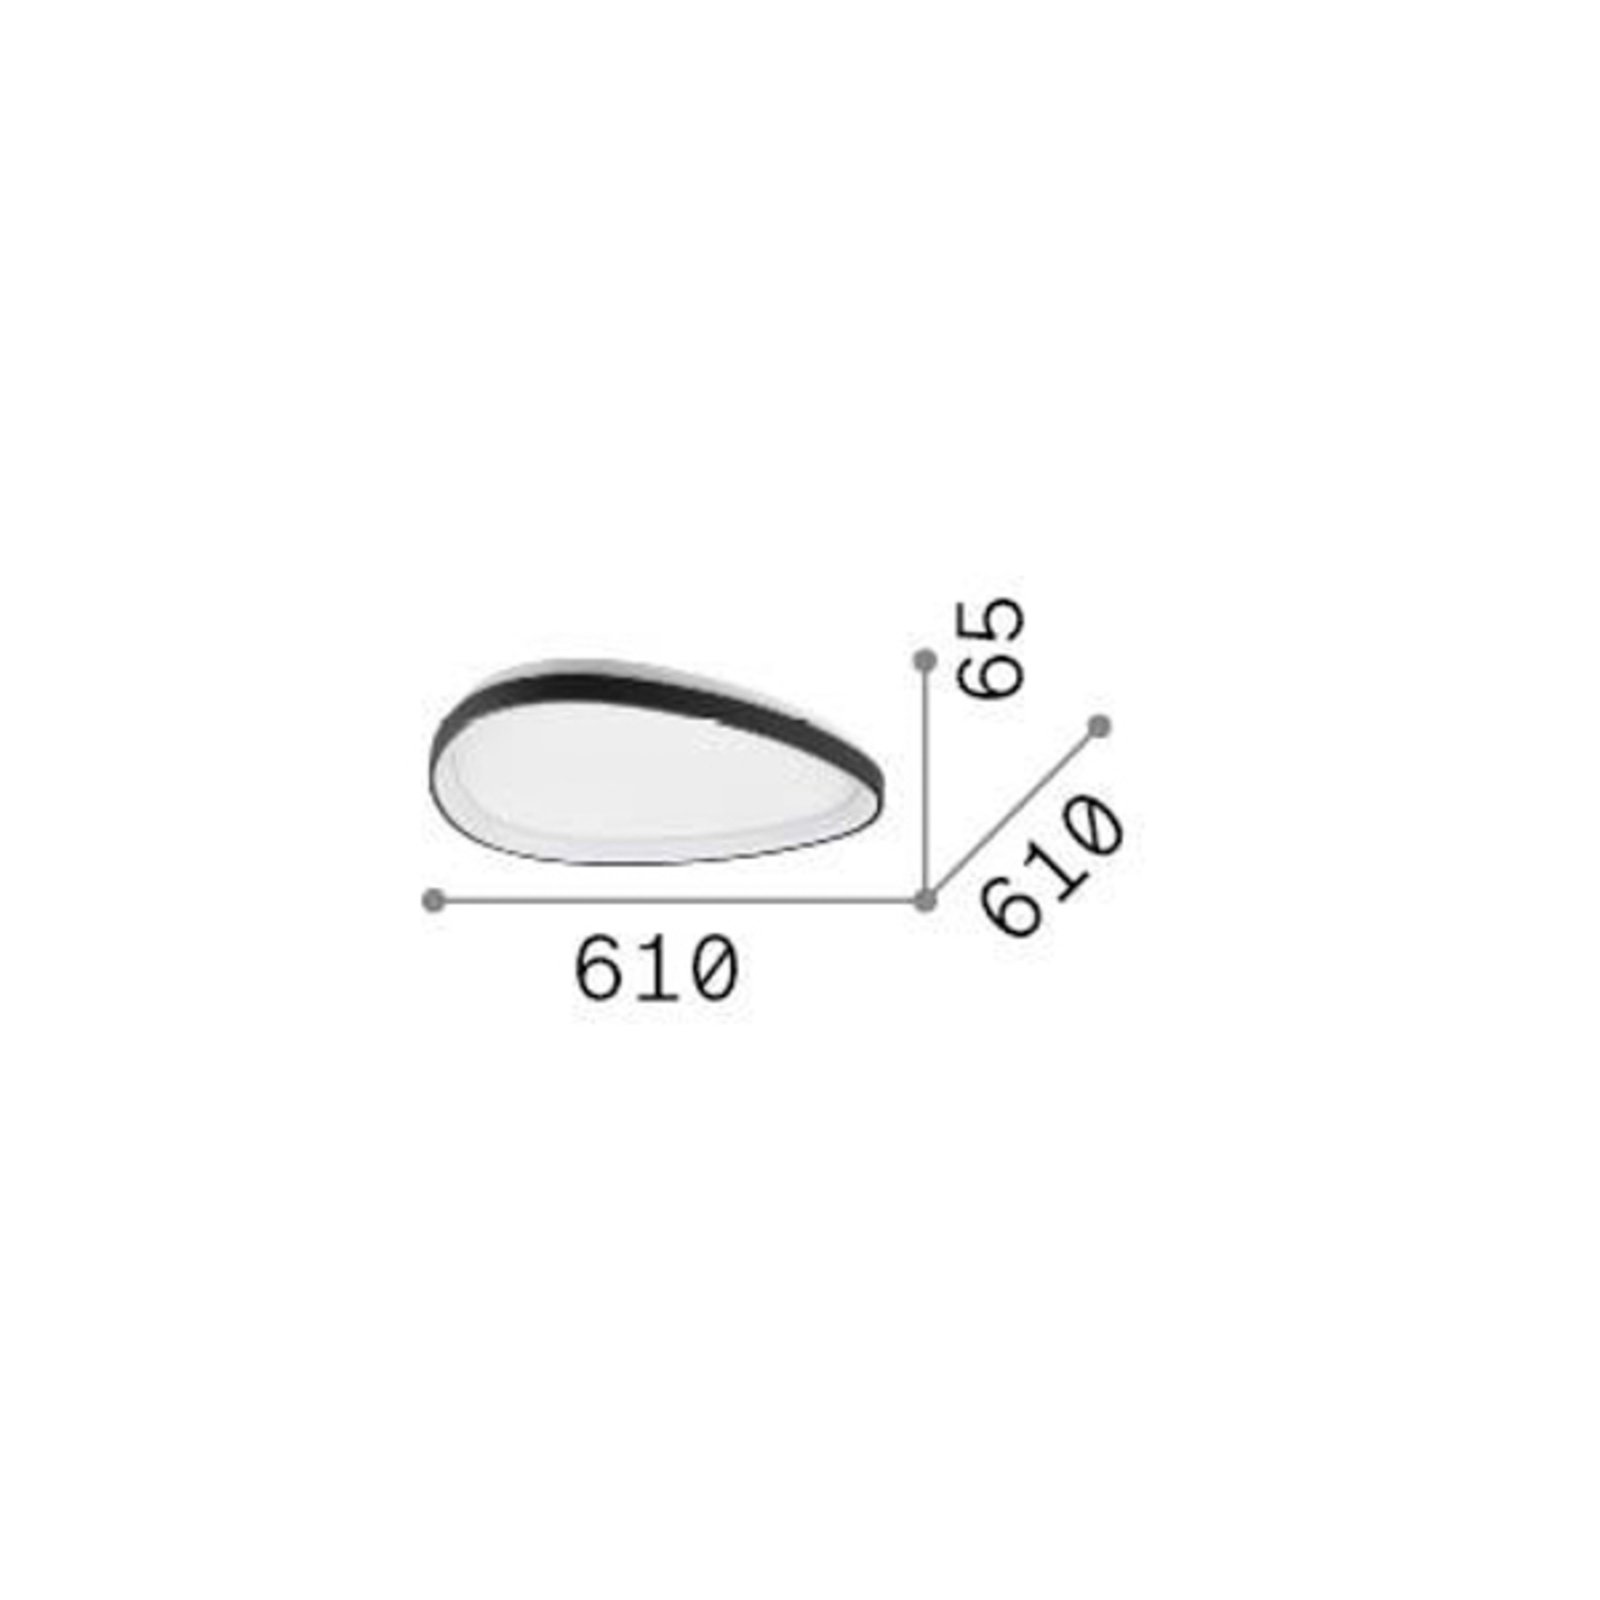 Ideal Lux LED-Deckenleuchte Gemini, schwarz, 61 cm, on/off